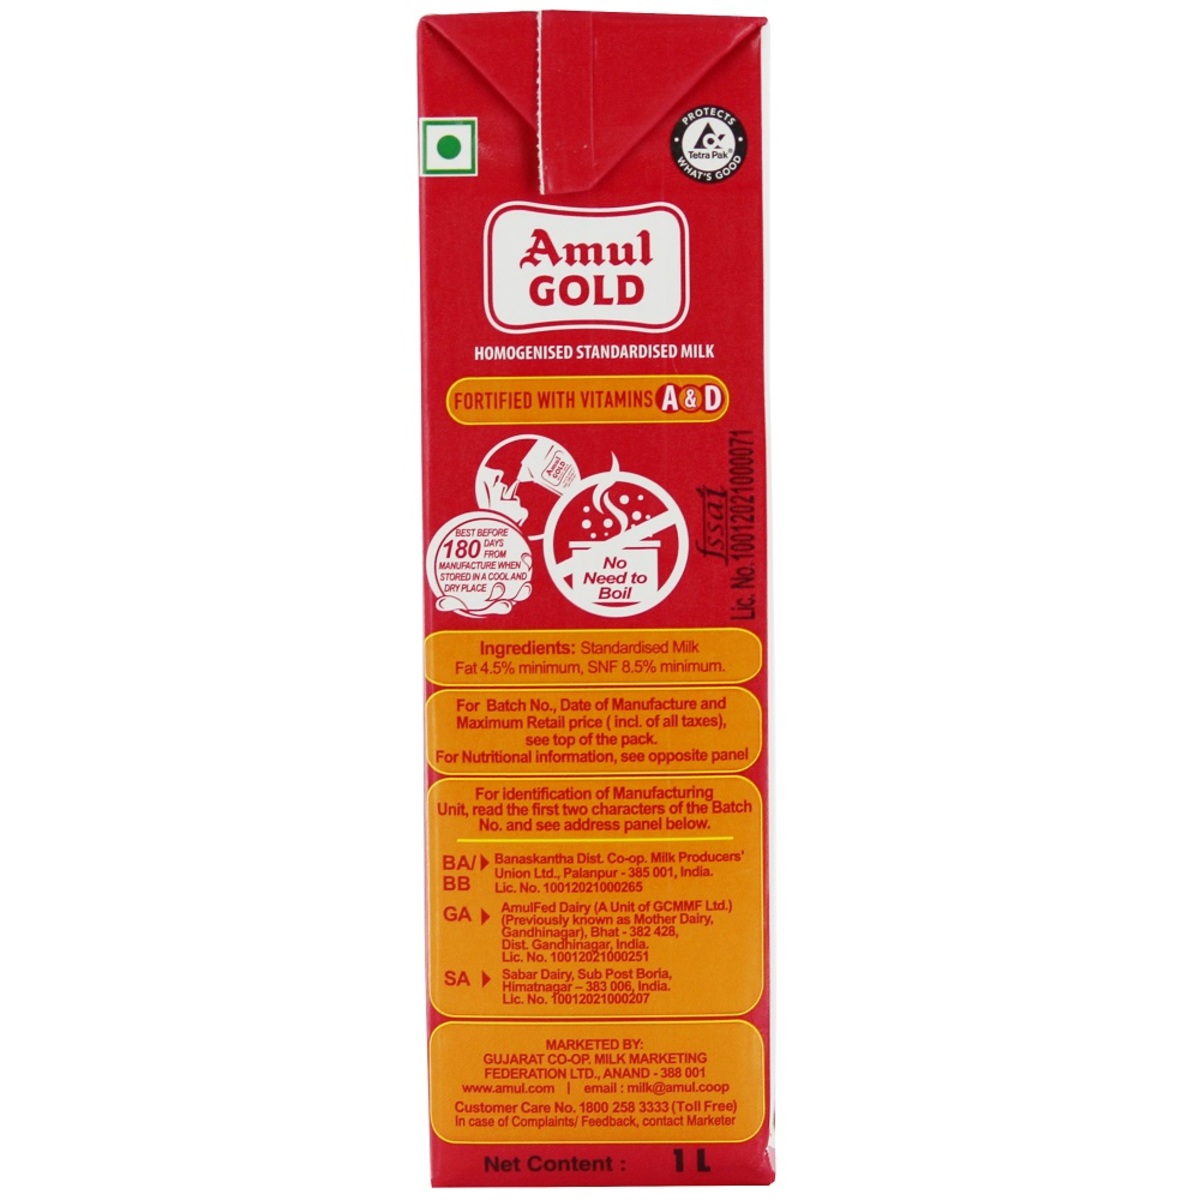 Amul Gold Homogenised Standardised Milk 1 Liter